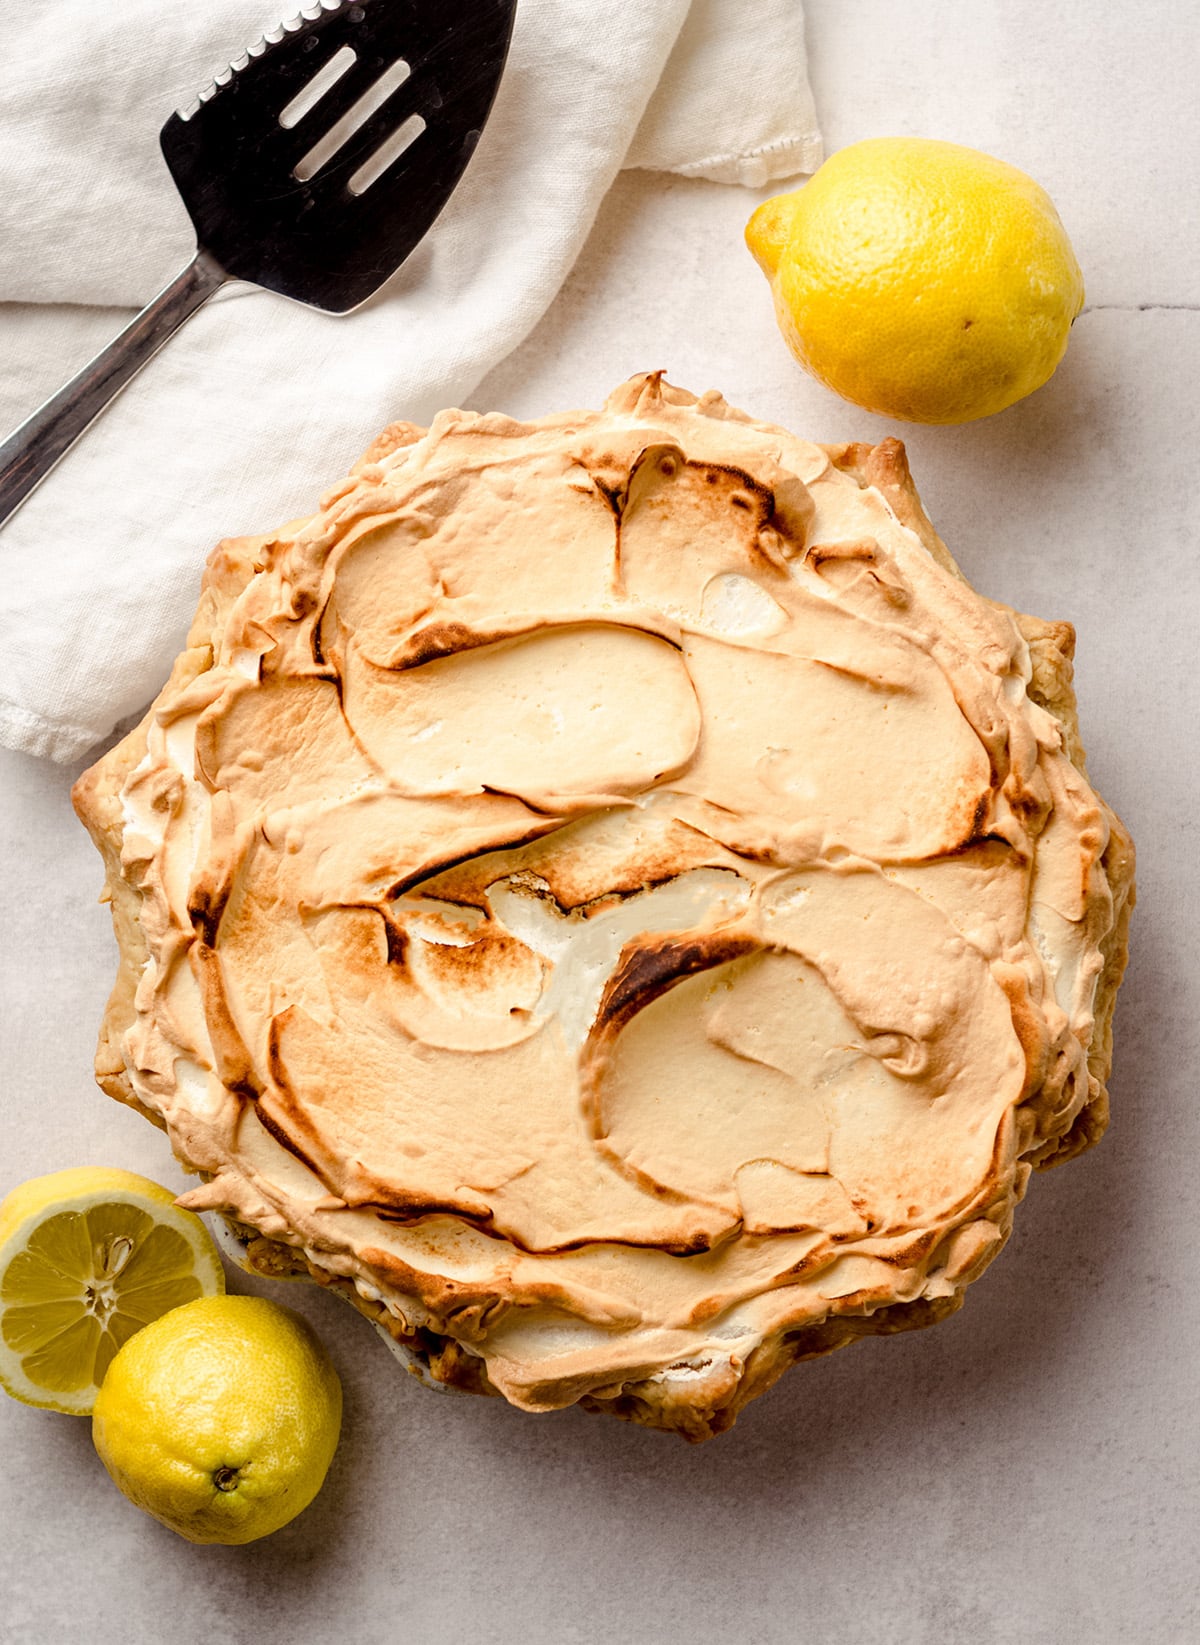 An overhead shot of a lemon meringue pie with browned meringue.